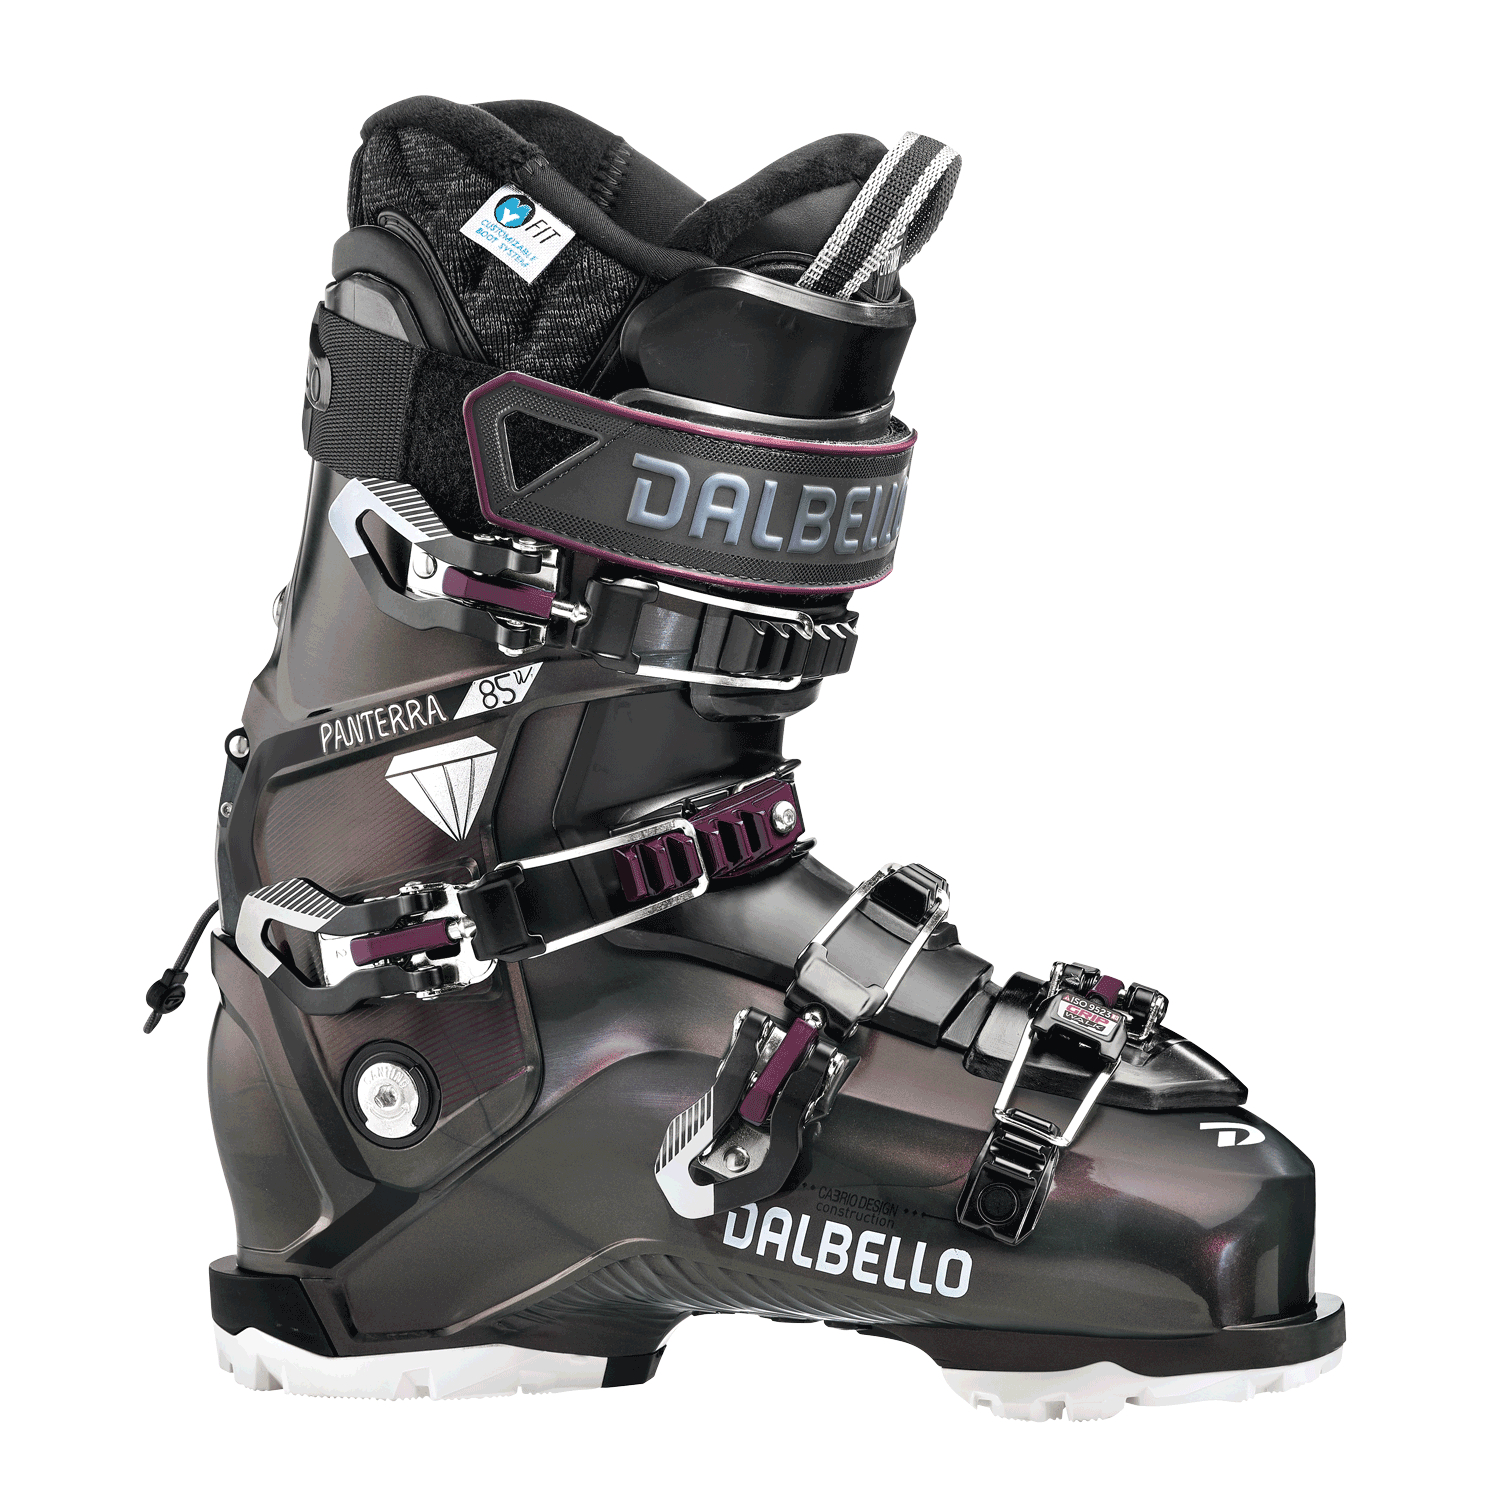 Характеристики лыжные ботинки для фрирайда Dalbello Panterra 85 W GW Malva/Burgundi (245)